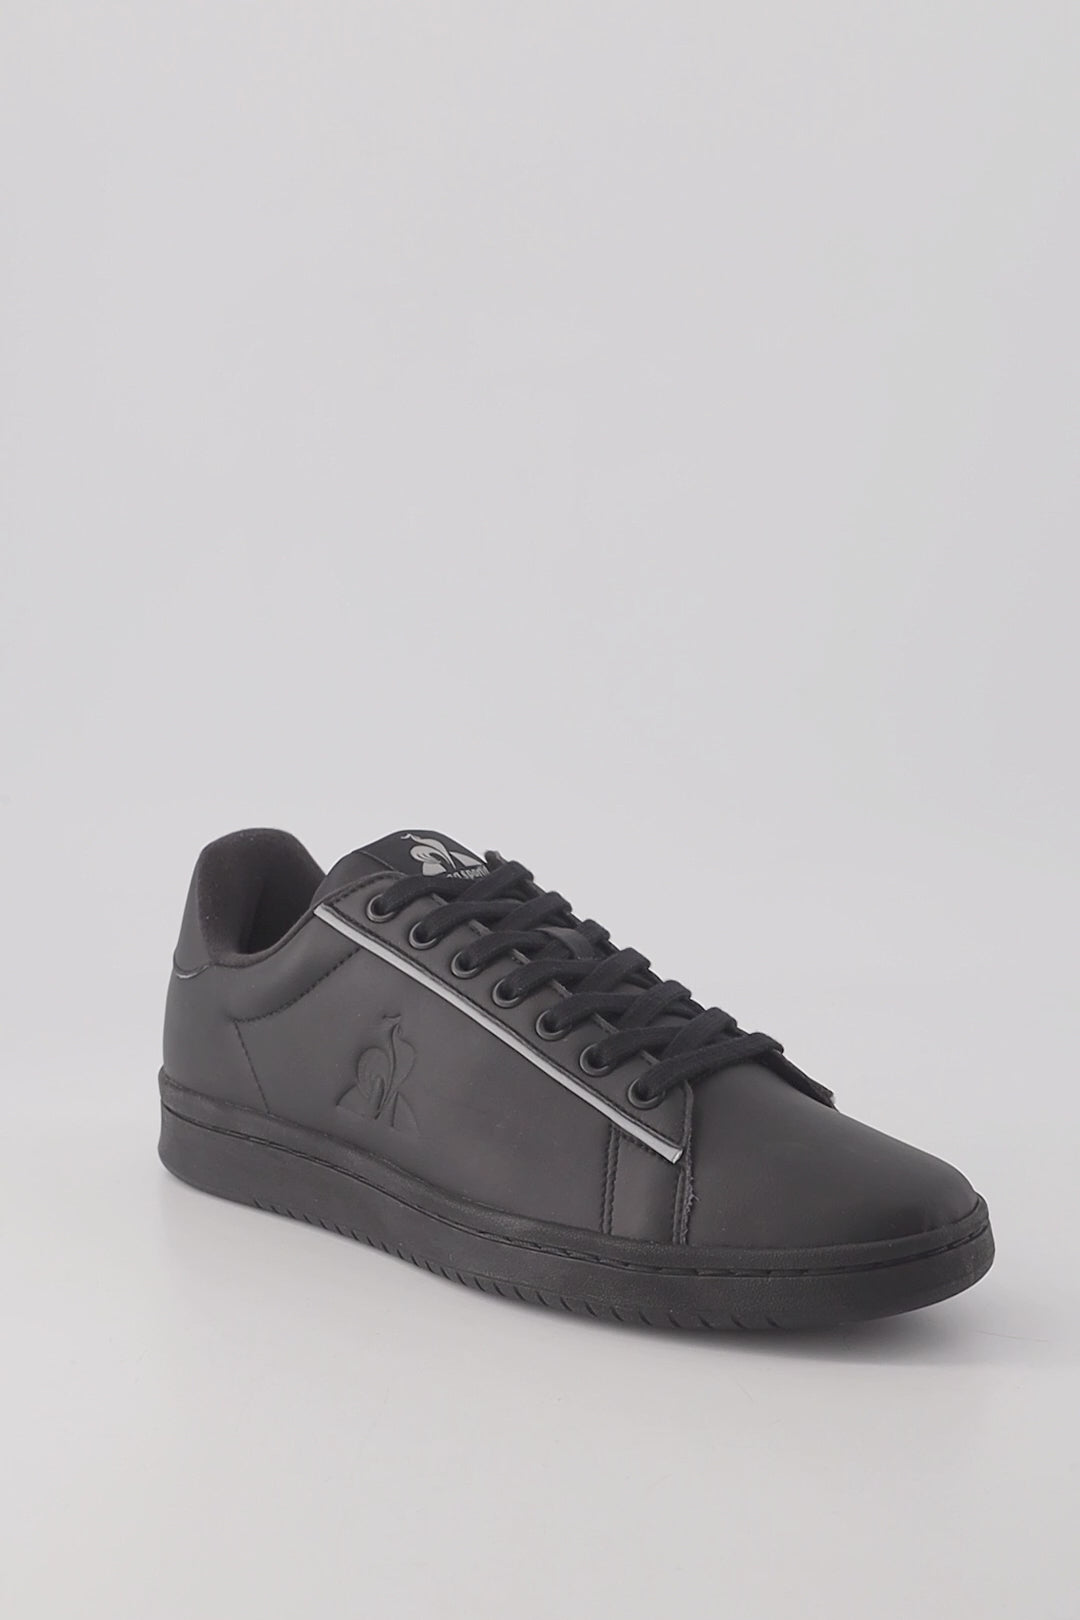 2410485-LCS COURT CLEAN triple black  | Shoes LCS COURT CLEAN Unisex